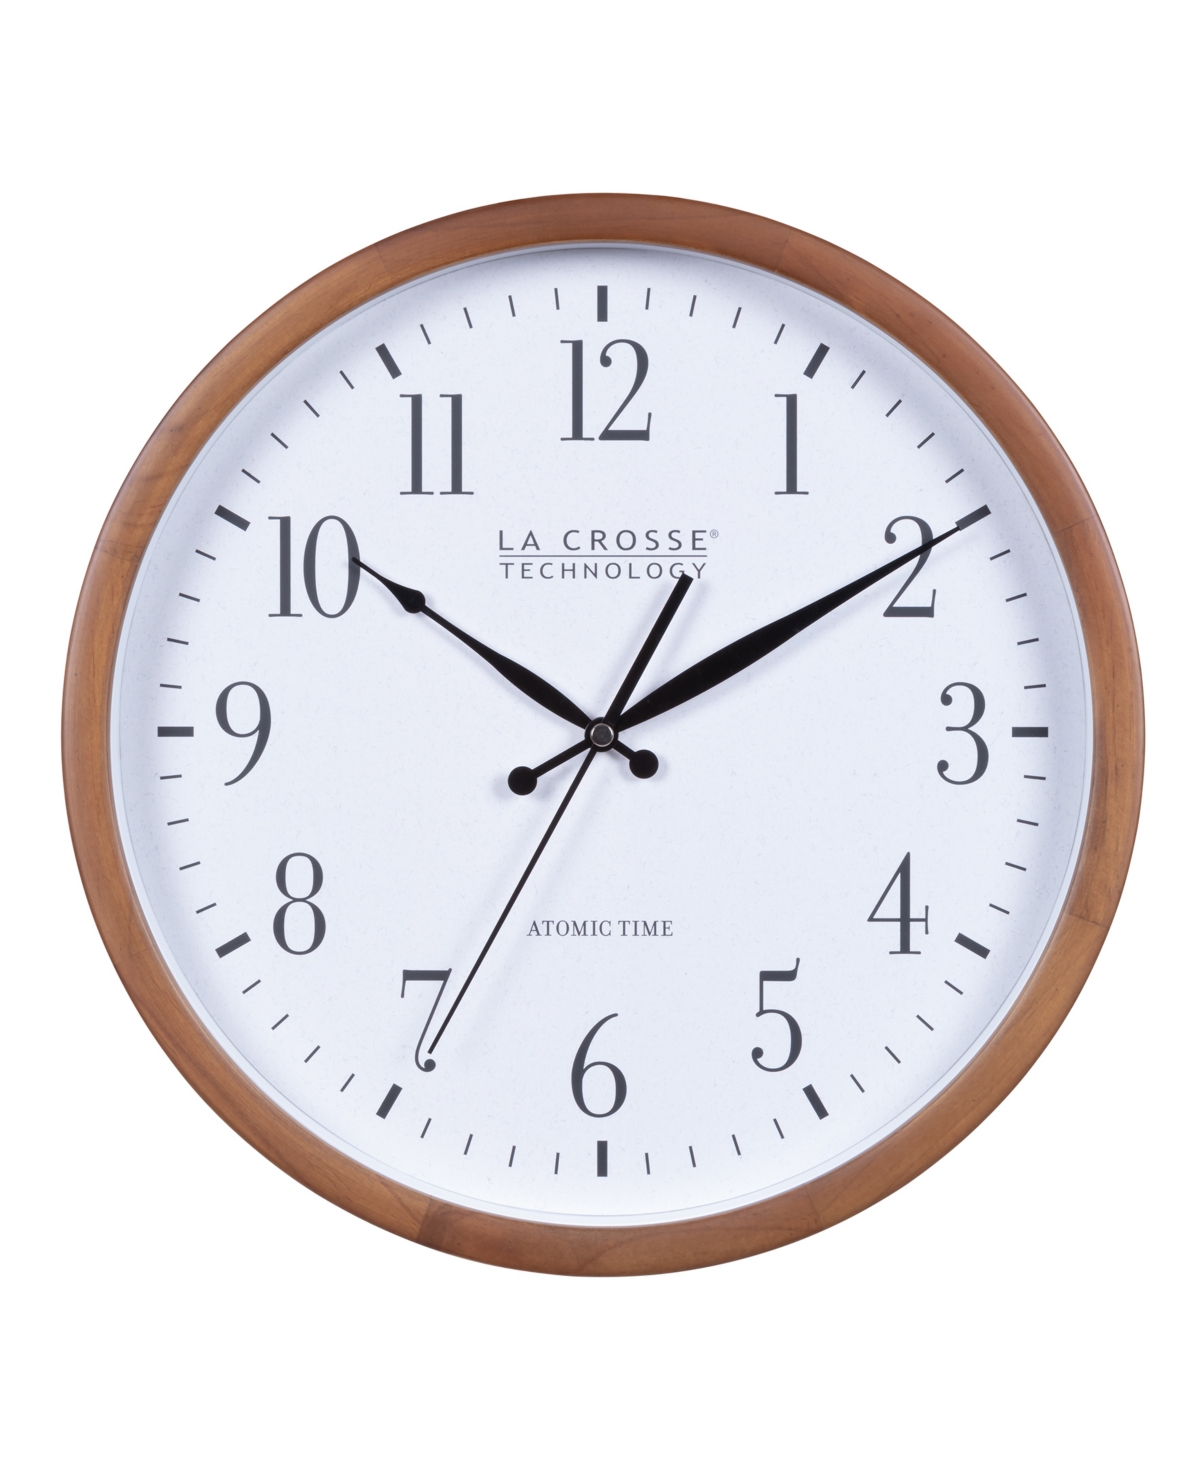 La Crosse Technology 404-50447-int 12.8" Atomic Hard Wood Walnut Analog Wall Clock